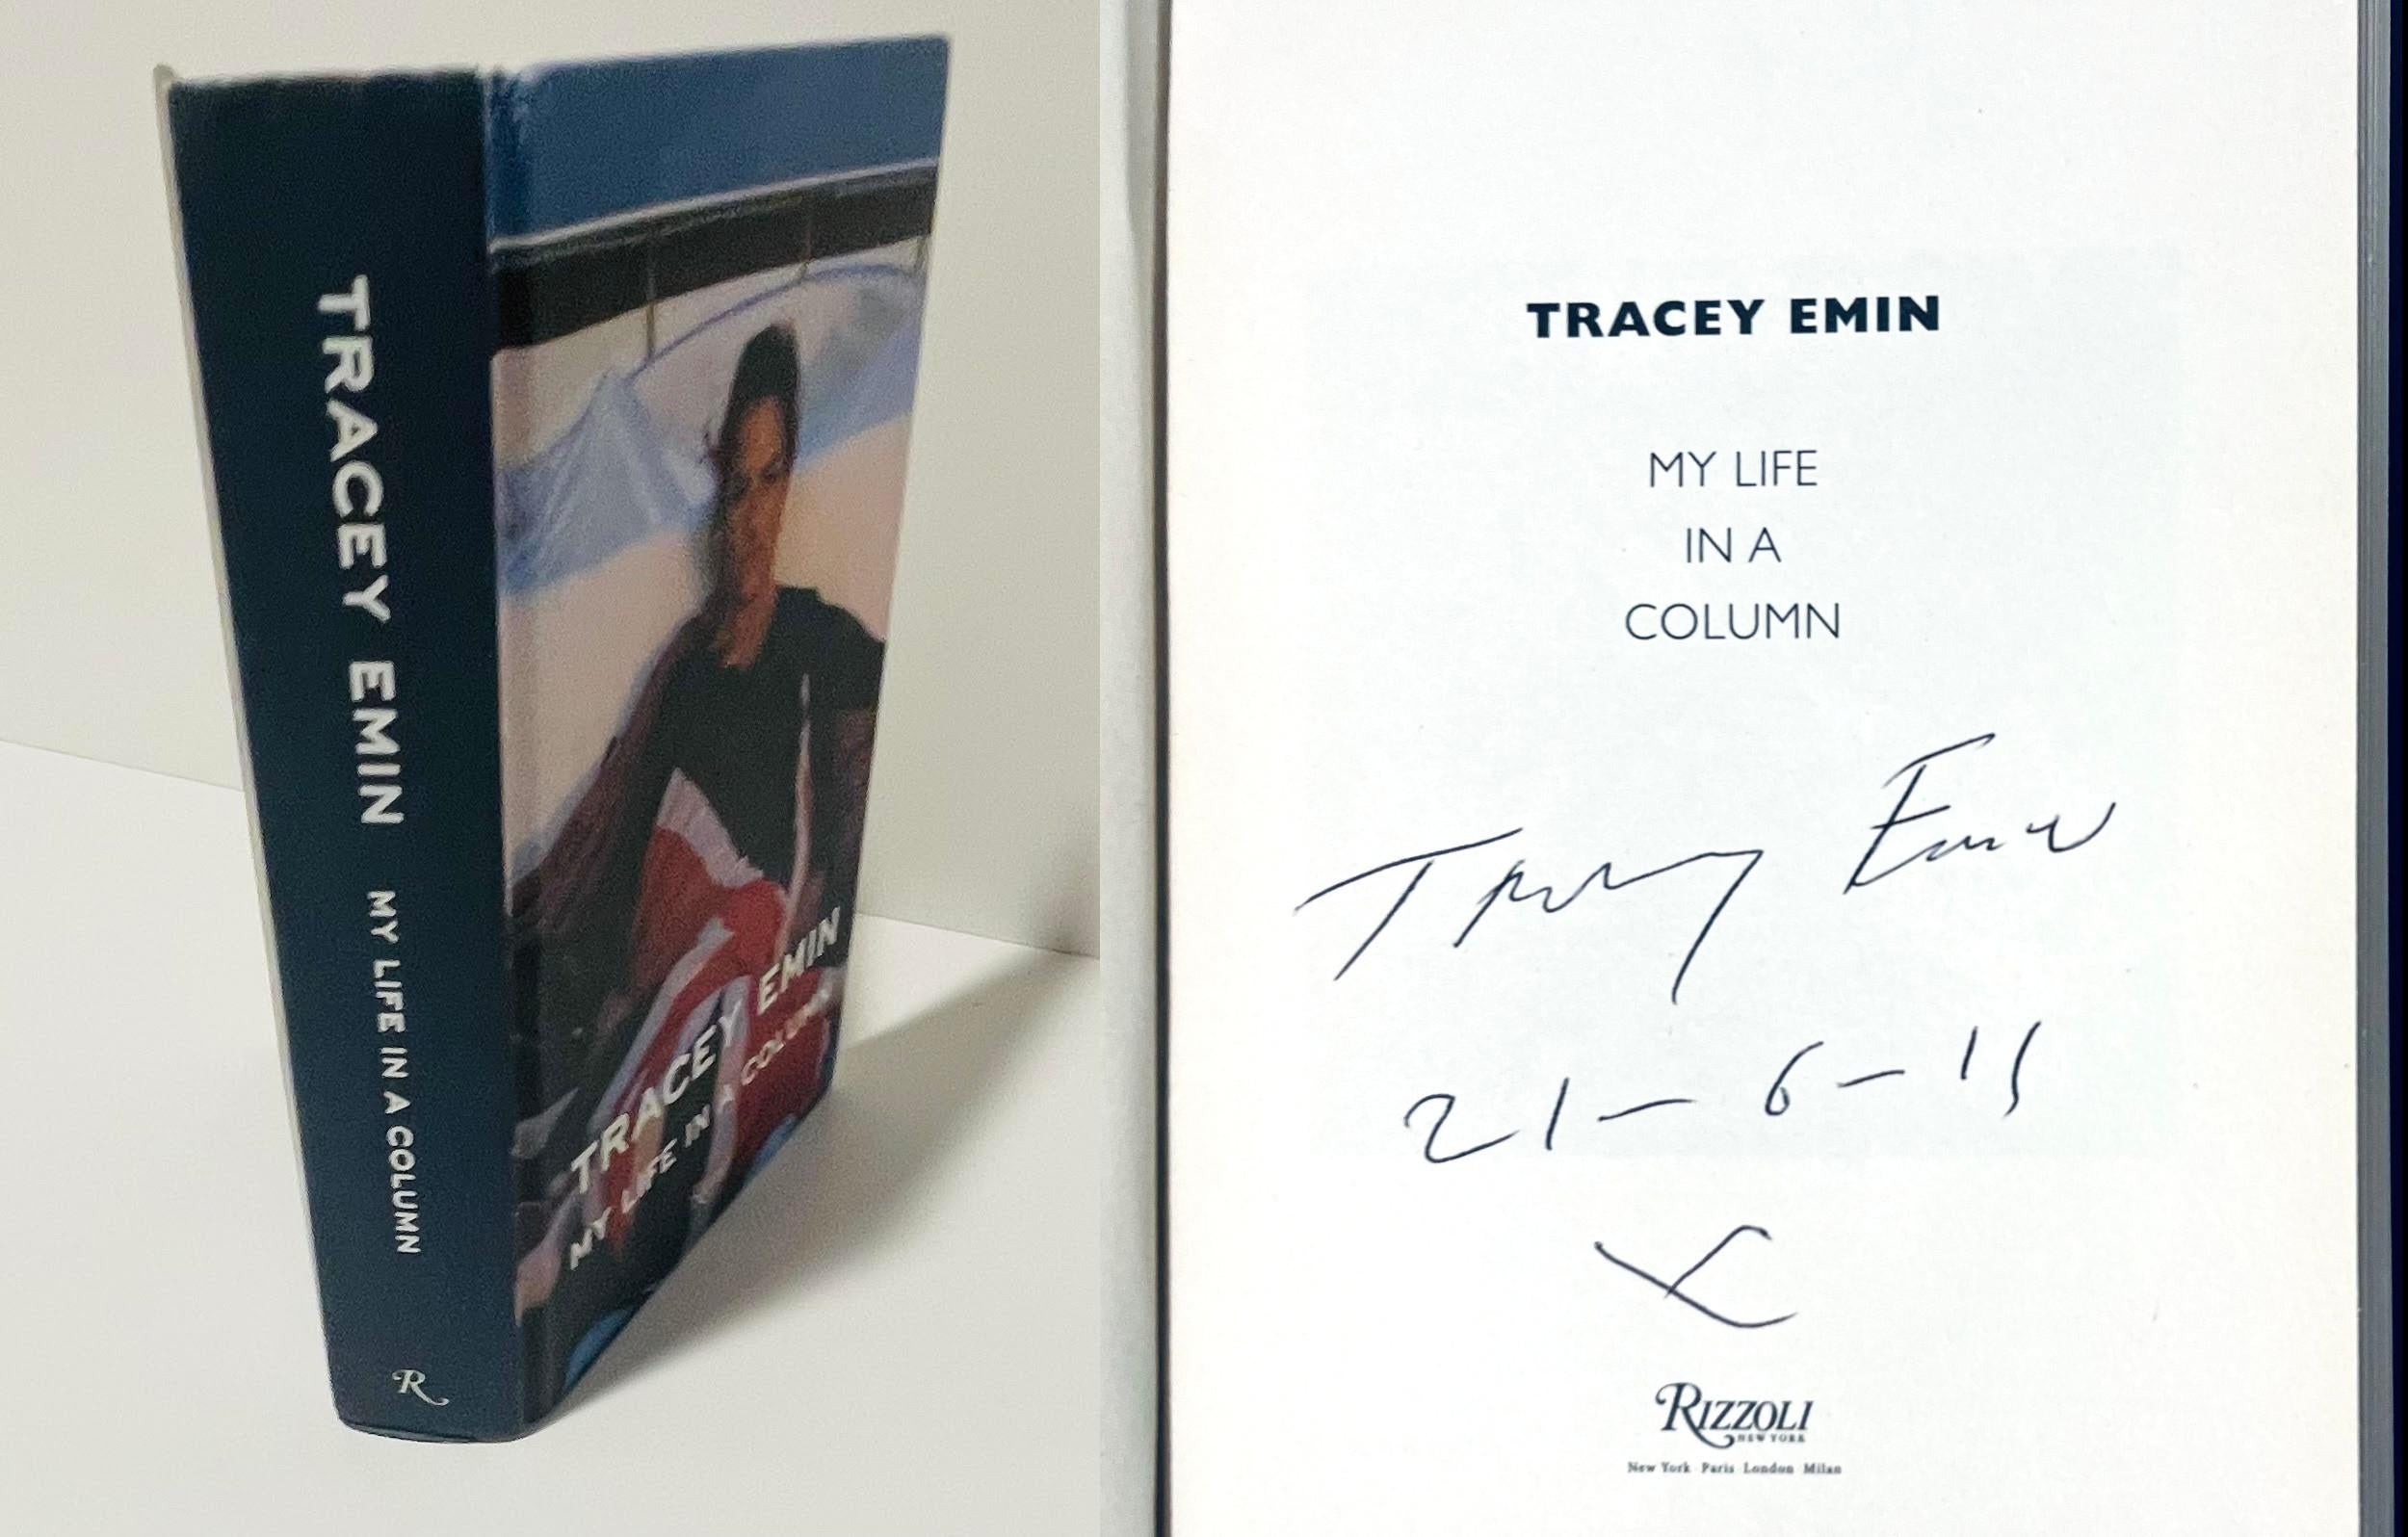 Tracey Emin
My Life in a Column (signé et daté à la main par Tracey Emin), 2011
Monographie reliée avec jaquette (signée et datée à la main sur la page de titre)
signé et daté 21-6-11 par Tracey Emin sur la page de titre
8 1/2 × 5 1/4 × 1 1/2